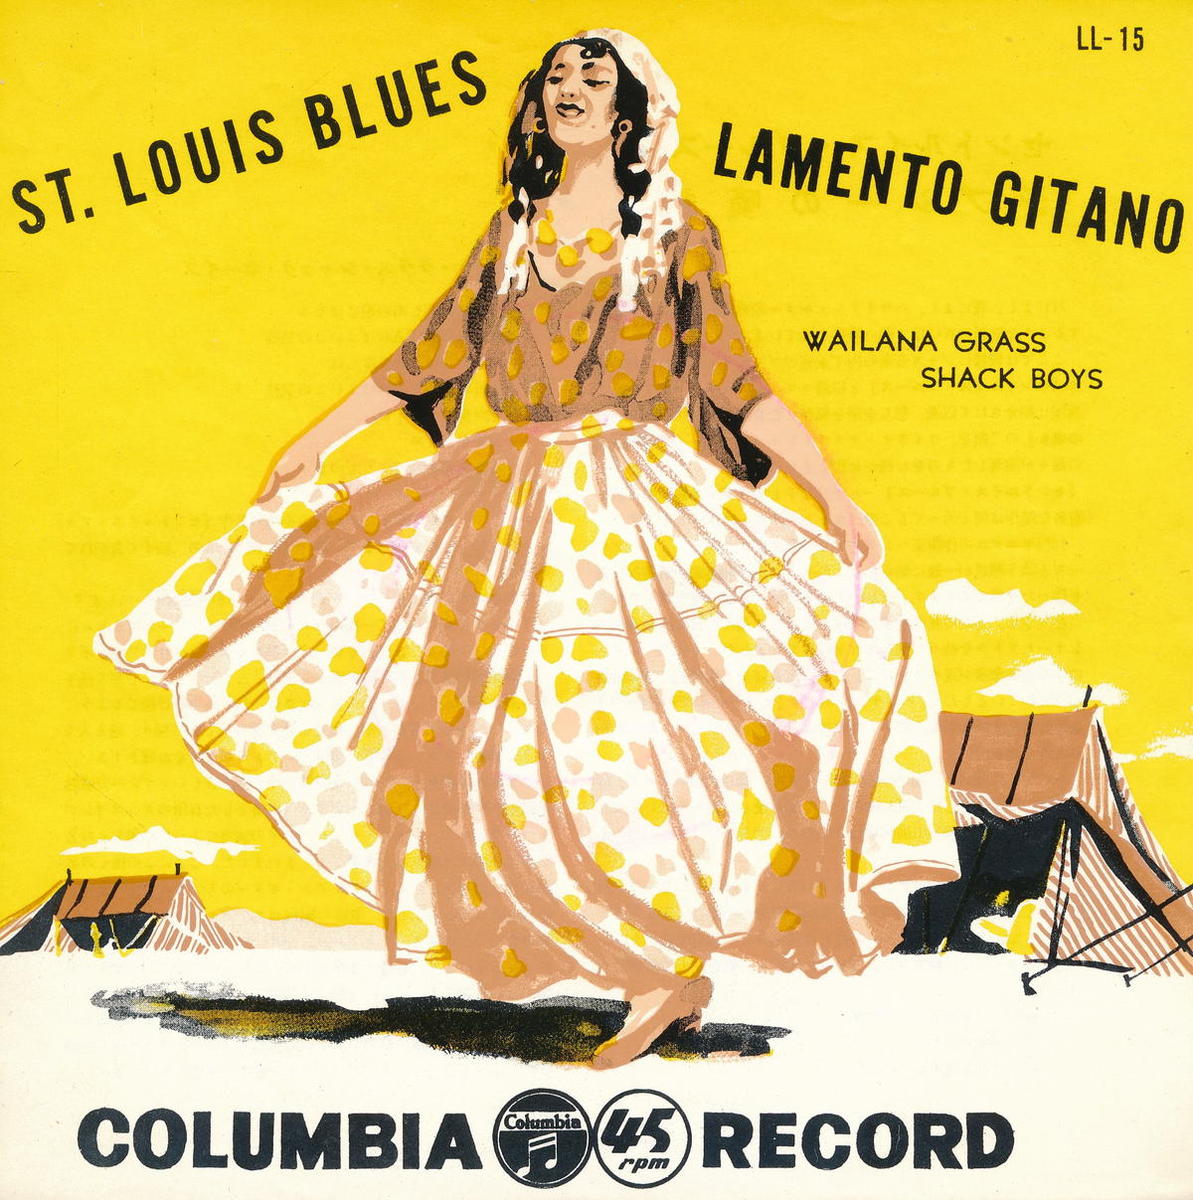 【中古】ワイナラ・グラス・シャック・ボーイズ(Wailana Grass Shack Boys)/セント・ルイス・ブルース(St. Louis Blues)／ジプシーの嘆き(Lamento Gitano)